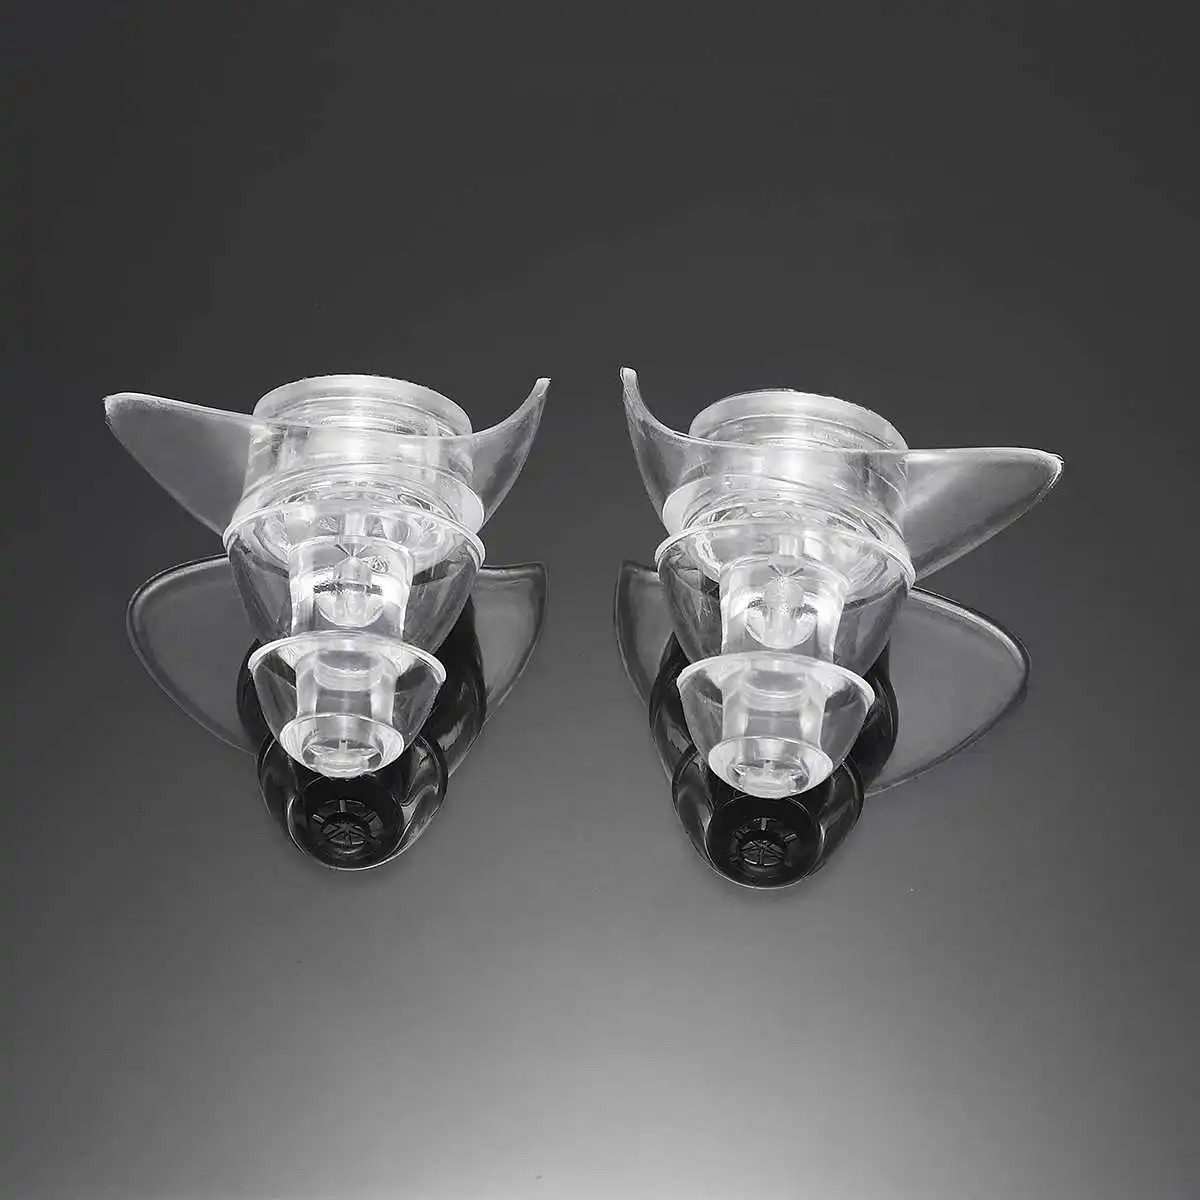 2 пары мягких силиконовых ушных затычек, защита для ушей, многоразовые профессиональные музыкальные затычки для ушей, предотвращение шума, для путешествий, сна, спорта - Цвет: Transparent